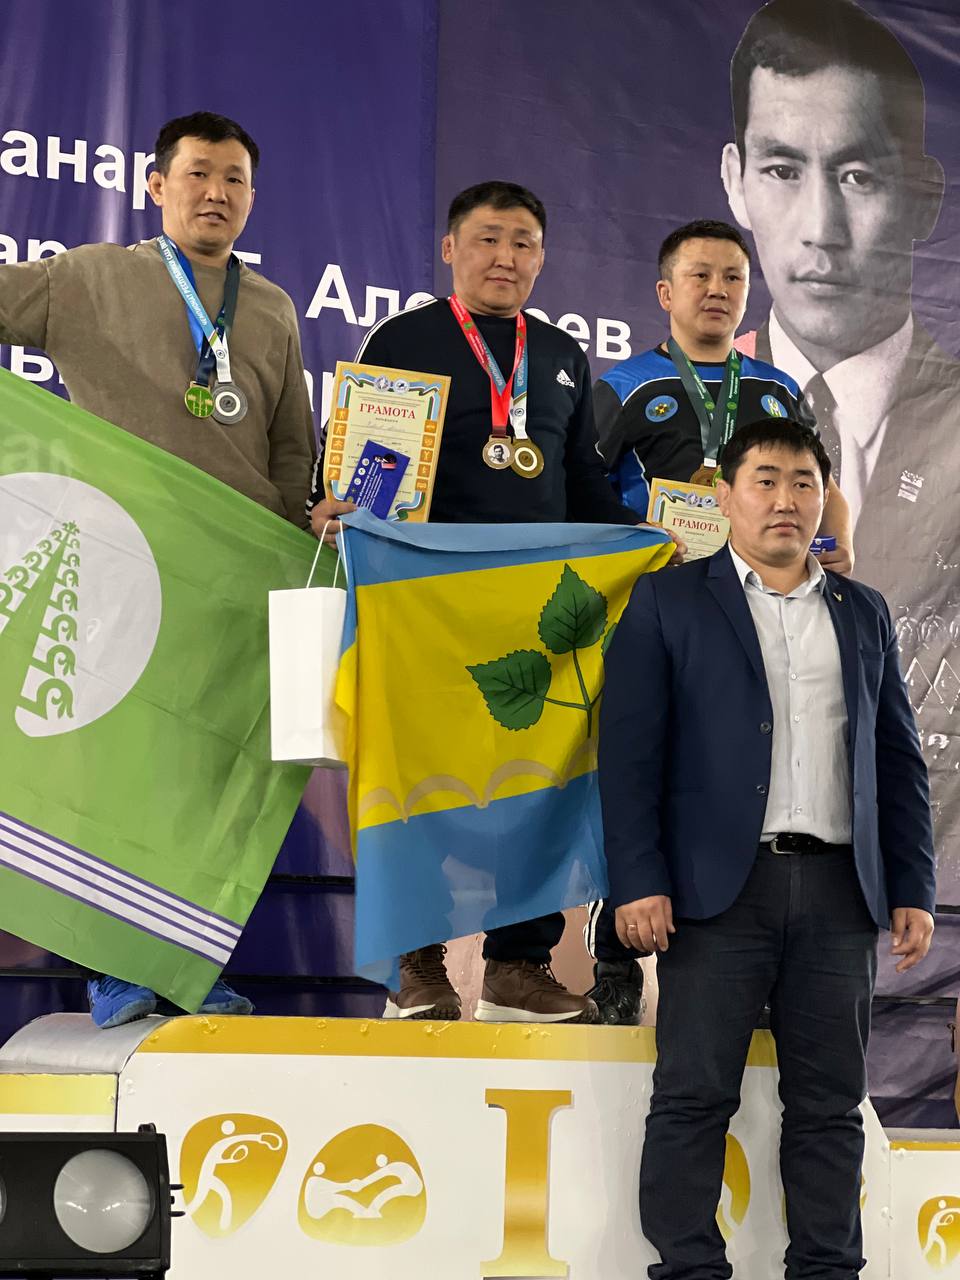 Максимов и Очиржапов стали абсолютными чемпионами Якутии по хапсагаю